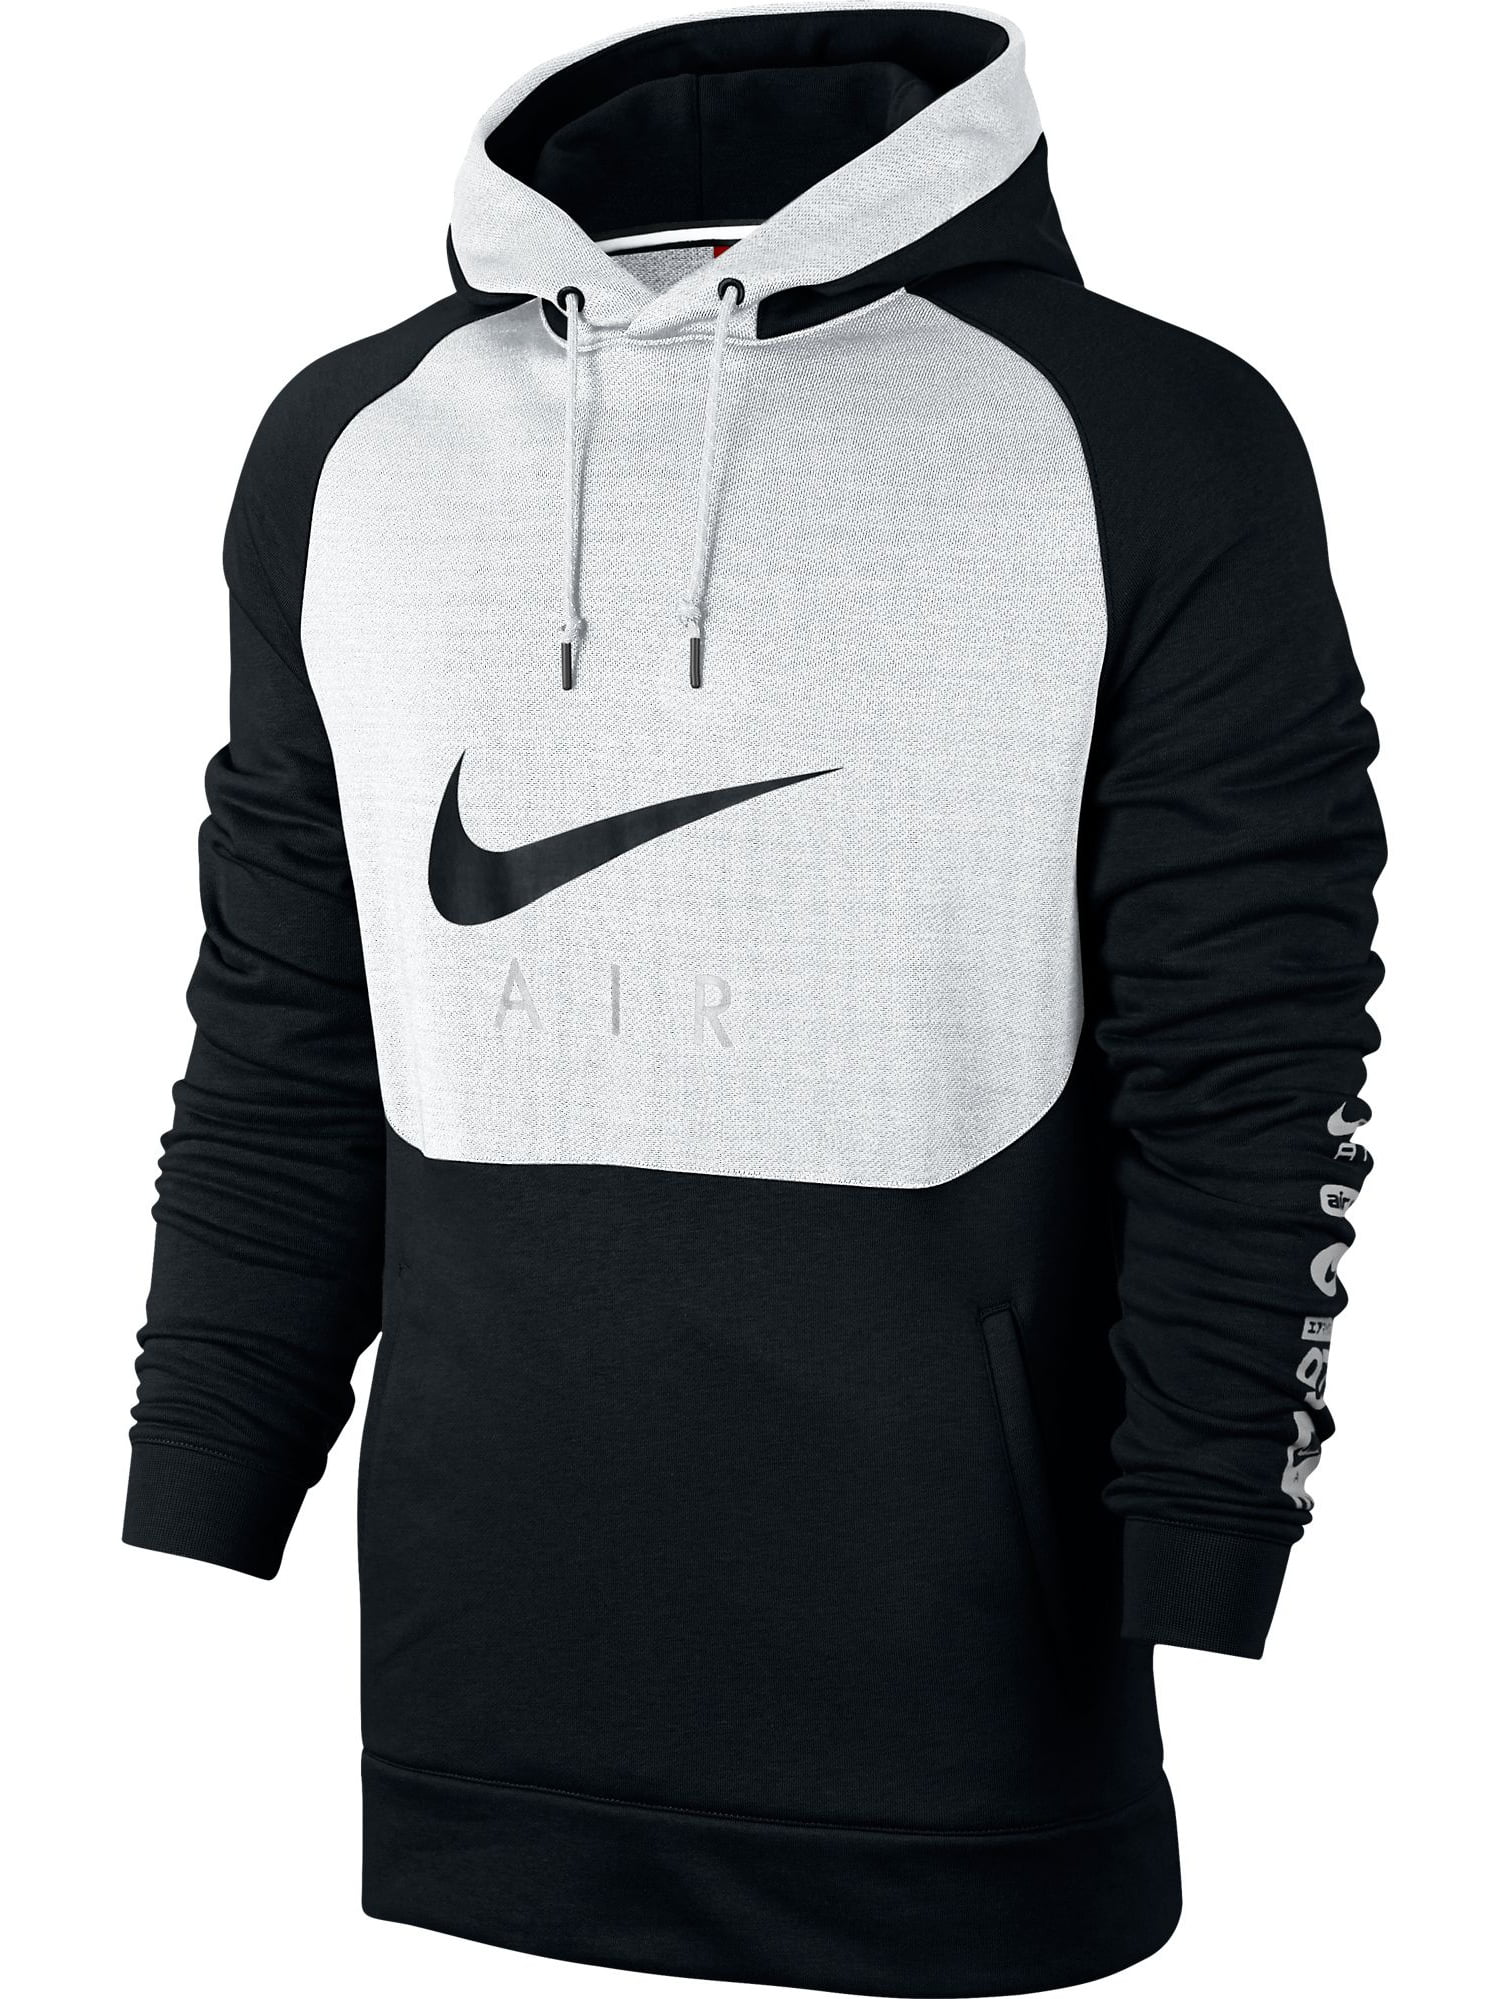  Nike  Nike  Basketball Air  Hybrid Men s Pullover Hoodie  